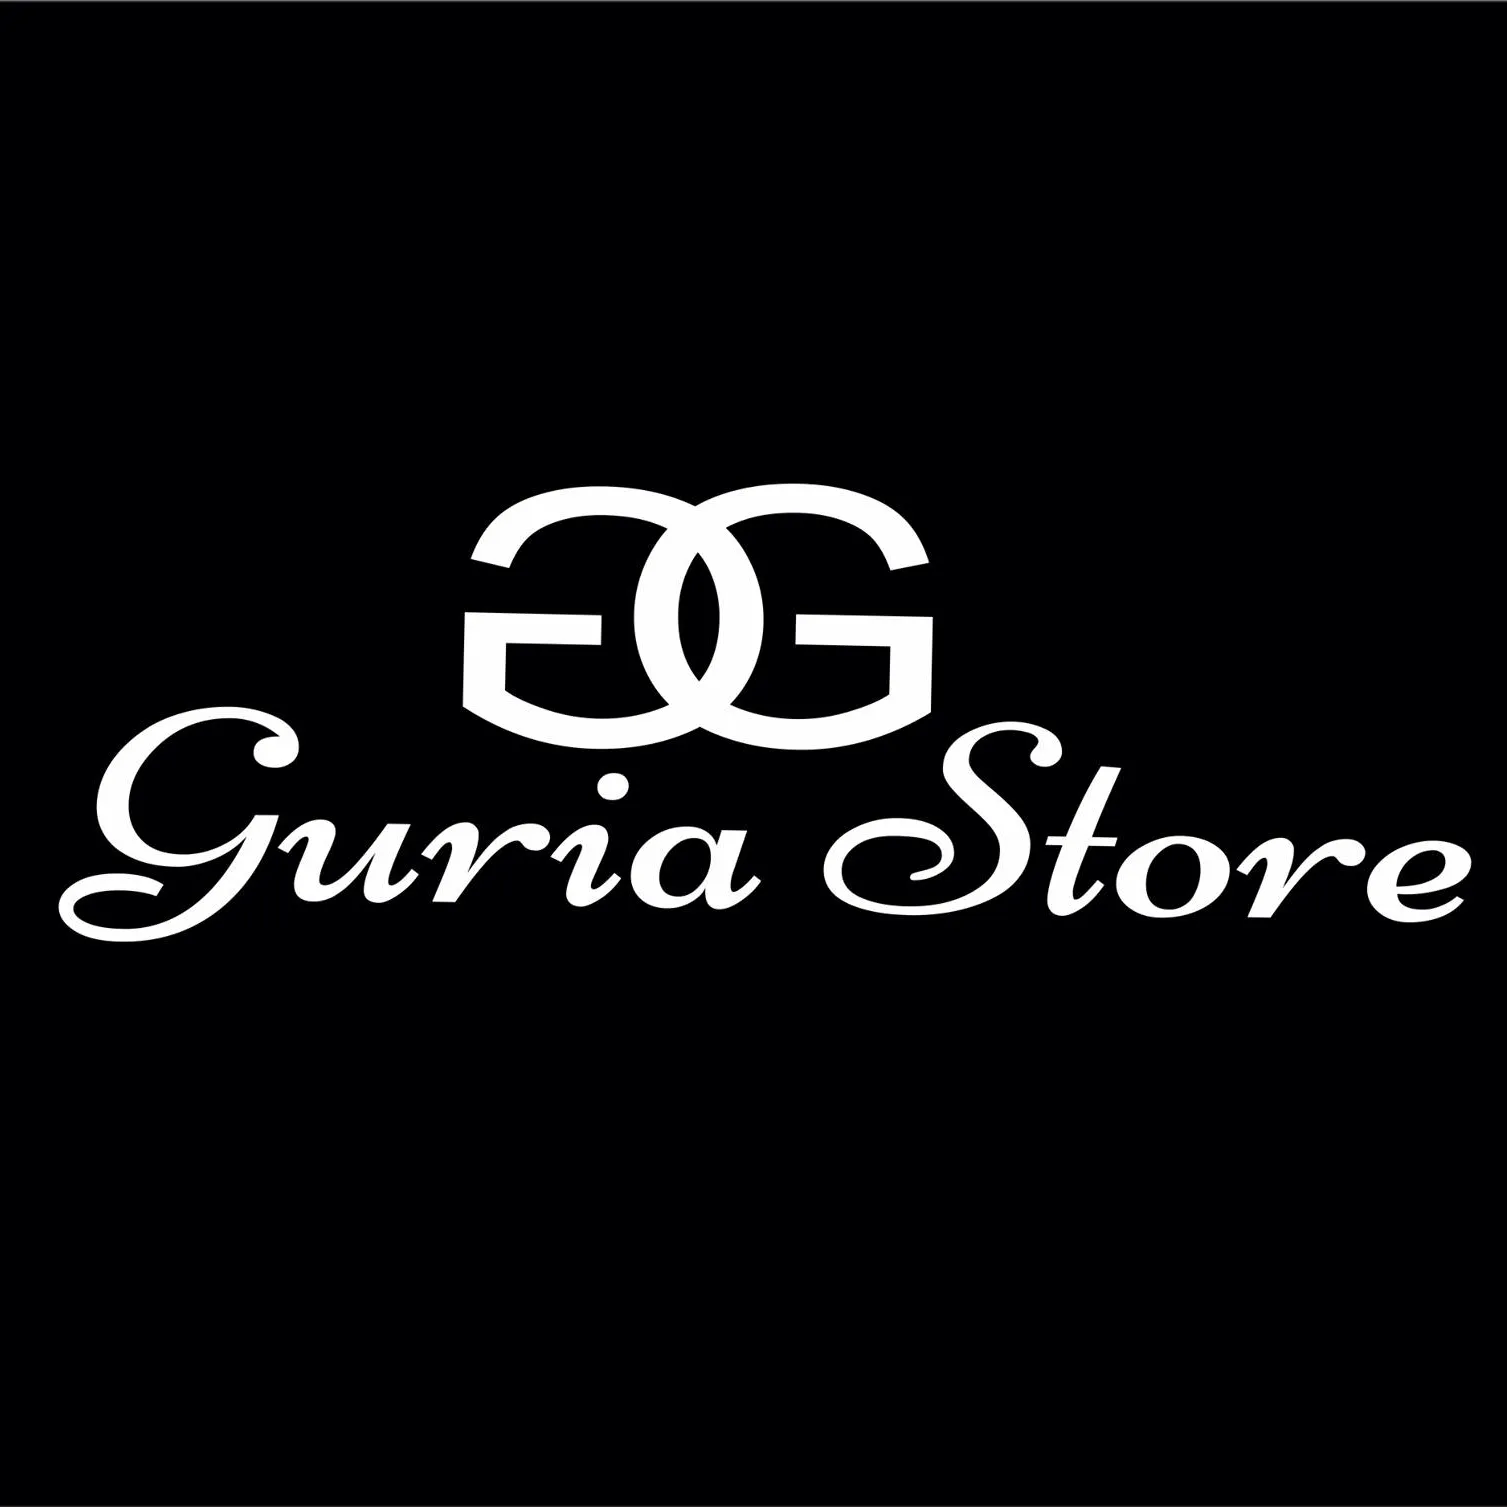 Código de Cupom Rede Guria Store 